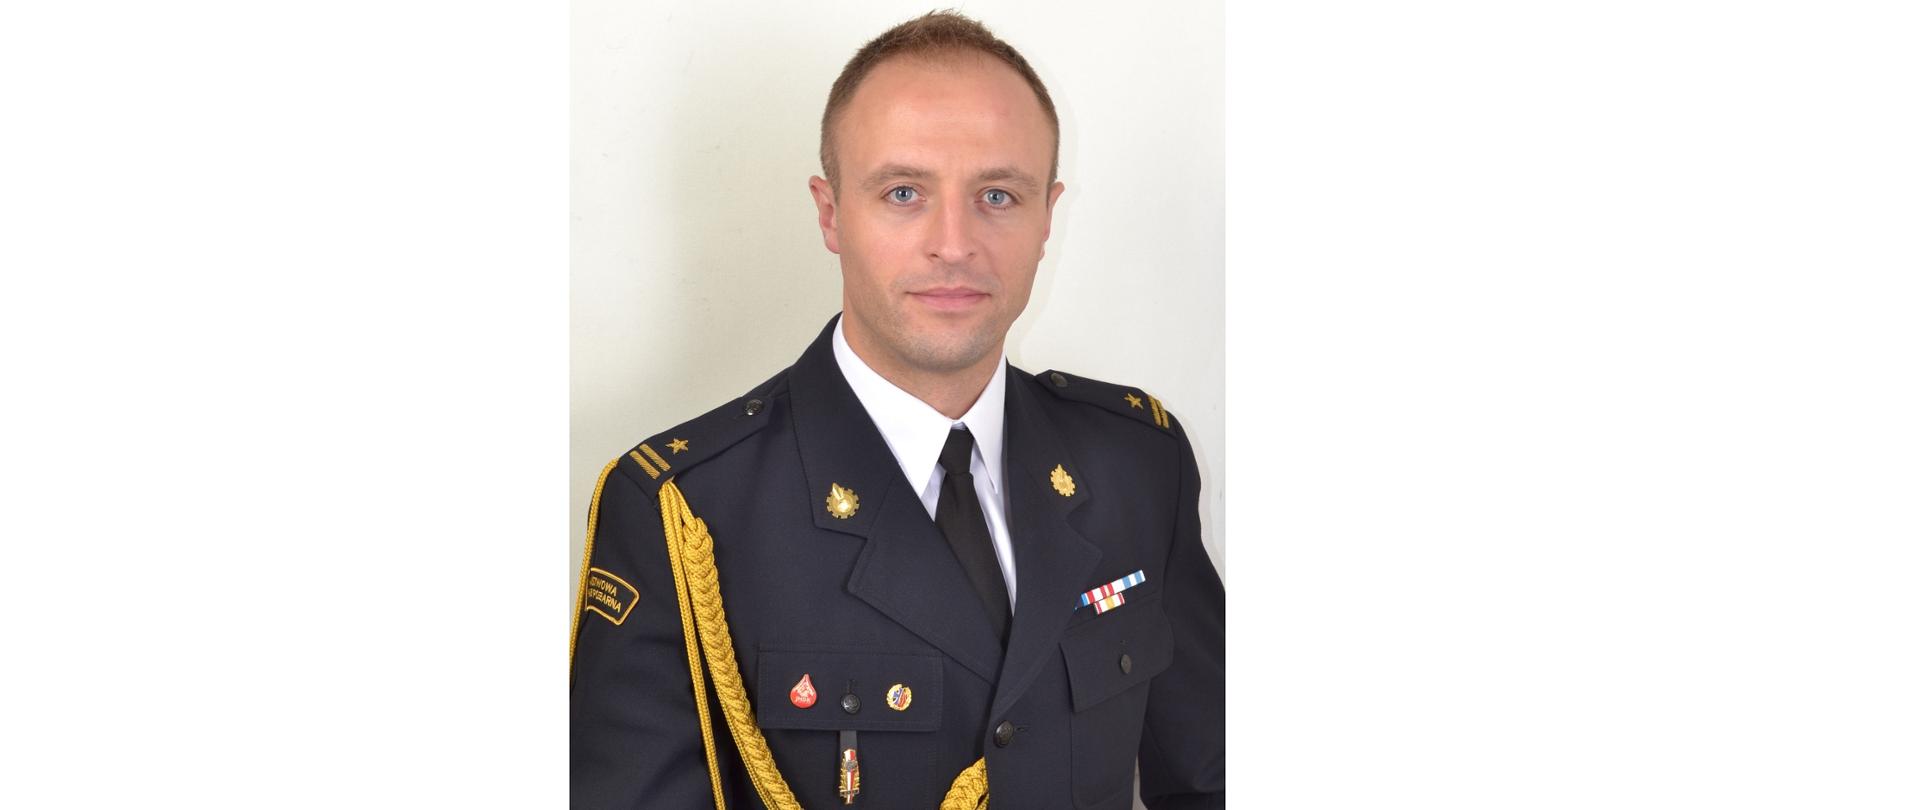 Komendant Powiatowy Państwowej Straży Pożarnej w Węgrowie - mł. bryg. Mateusz Bieniak